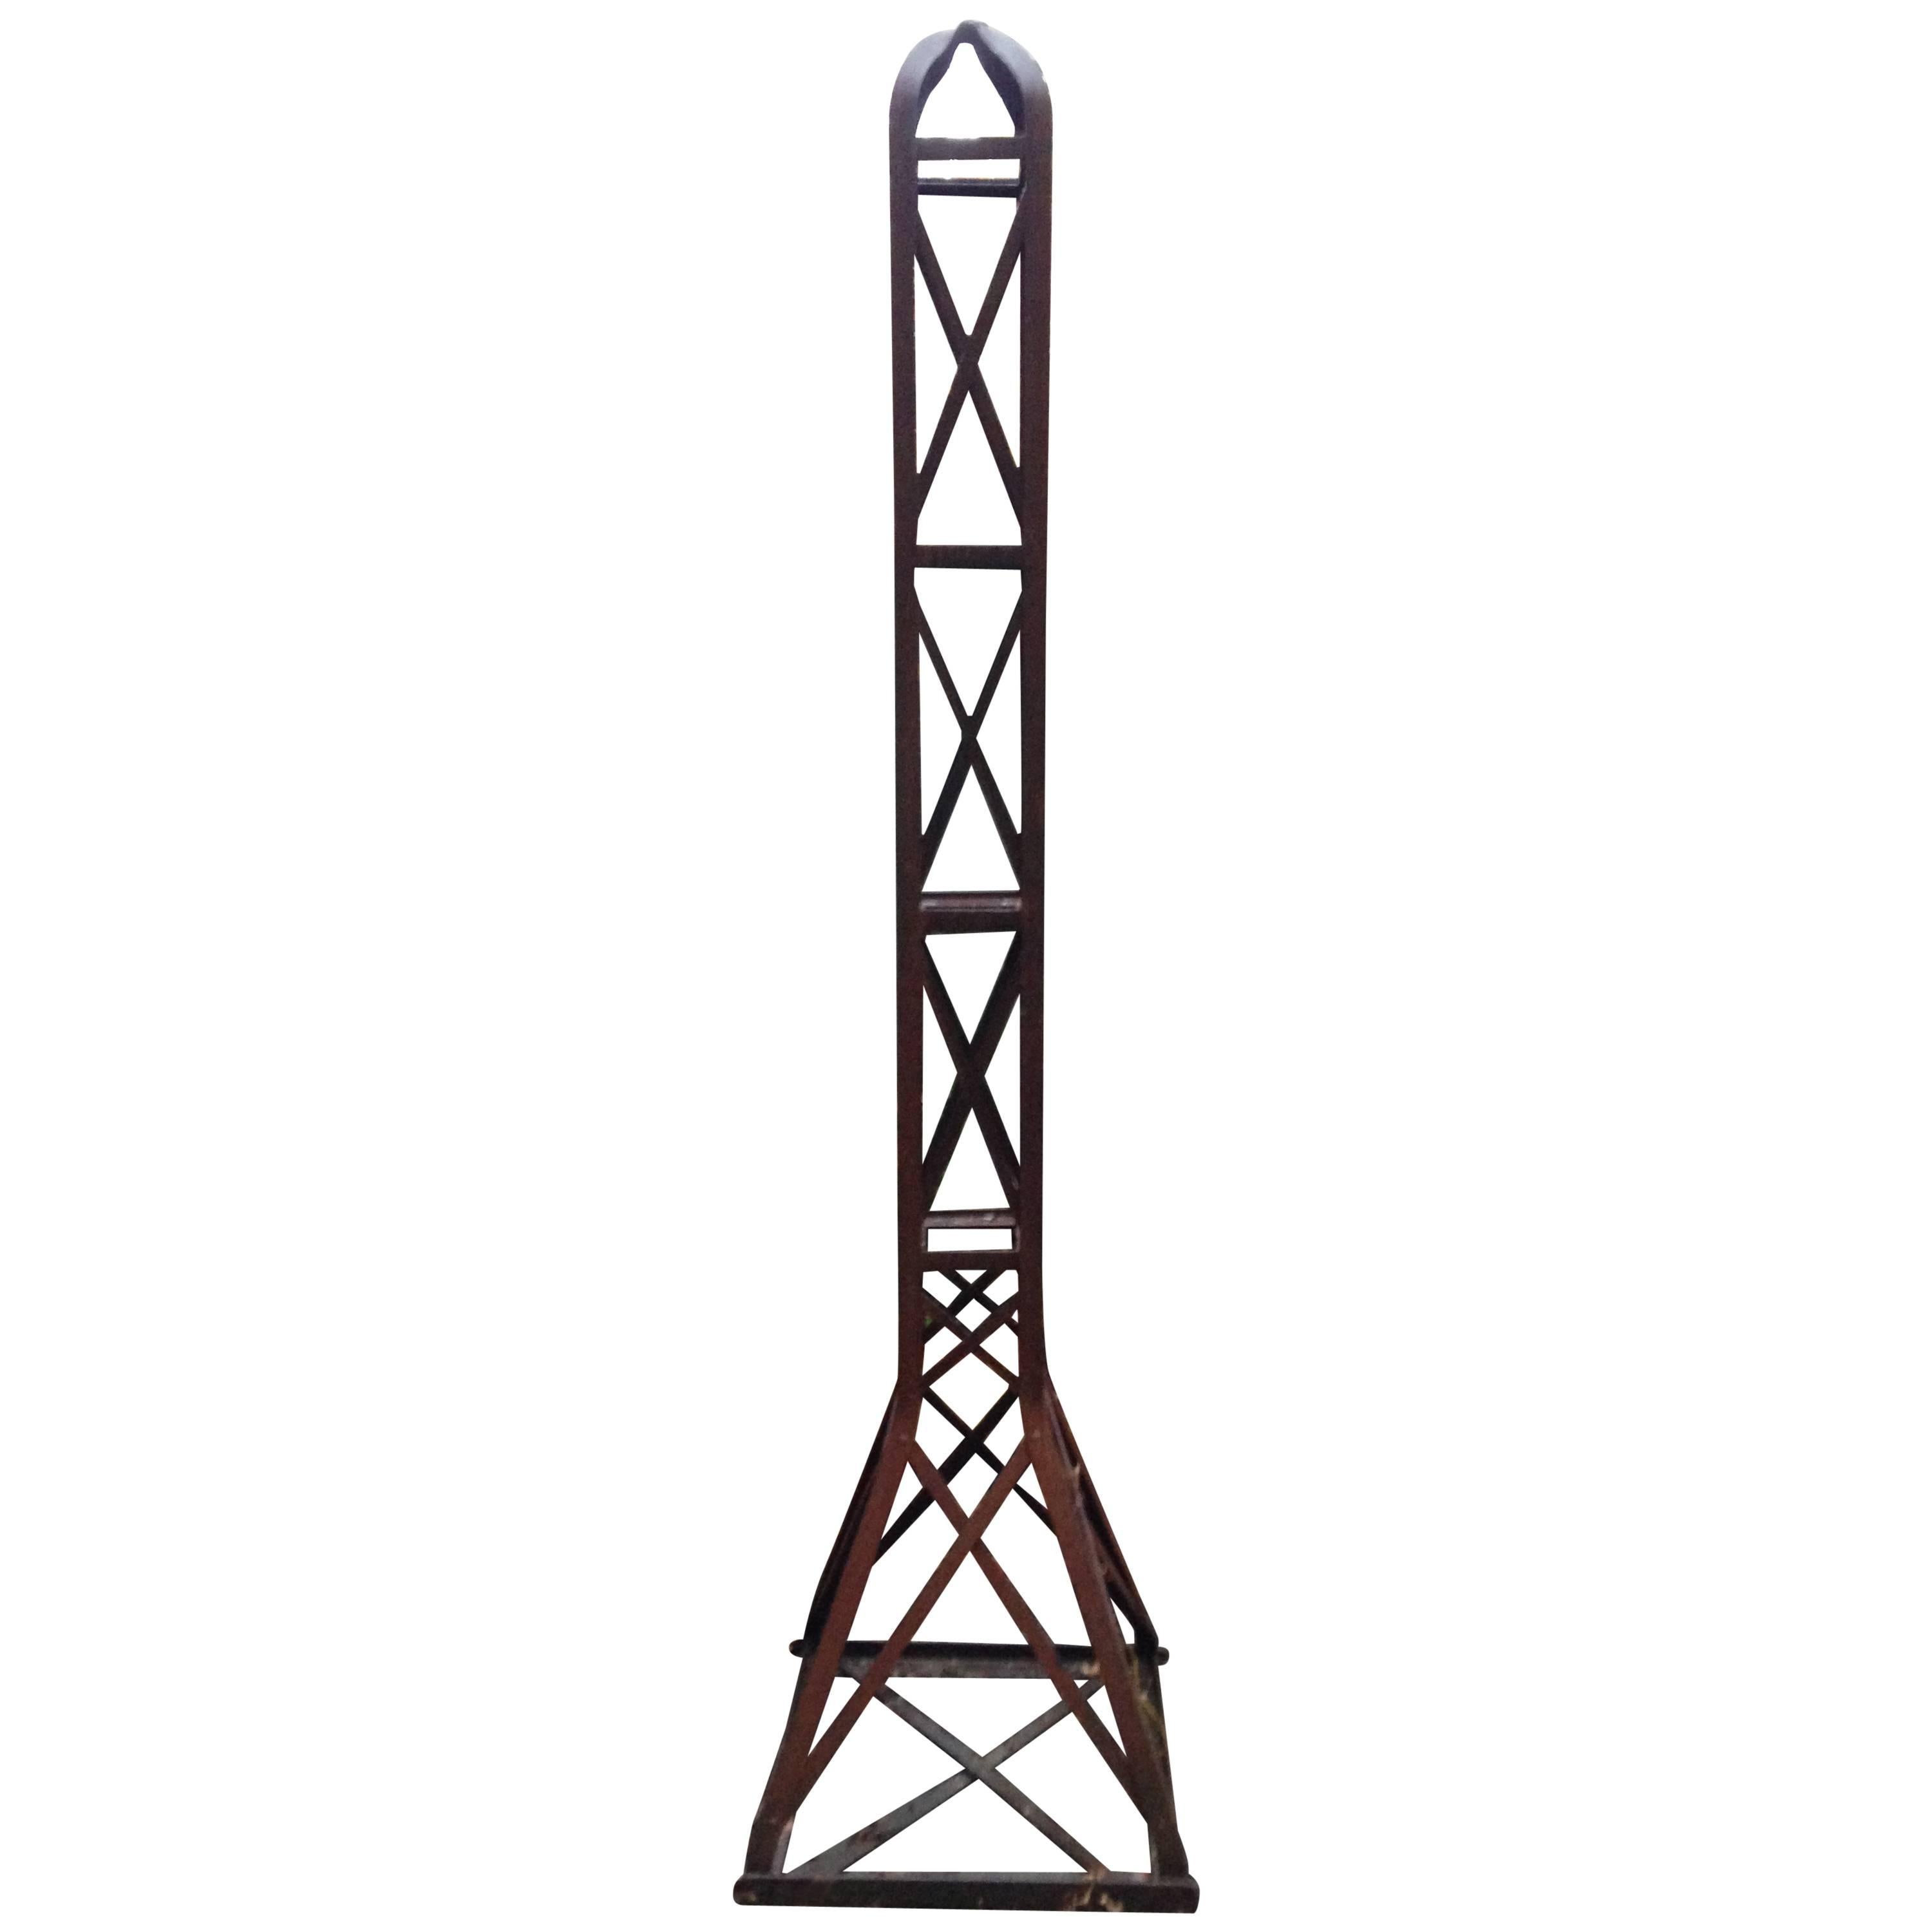 Atemberaubende, seltene freistehende französische Skulptur / Obelisk aus Schmiedeeisen im Stil der modernen Industrie, die die Faszination des späten 19. und frühen 20. Jahrhunderts für den Eiffelturm widerspiegelt. Eine nüchterne Arbeit aus Eisen,